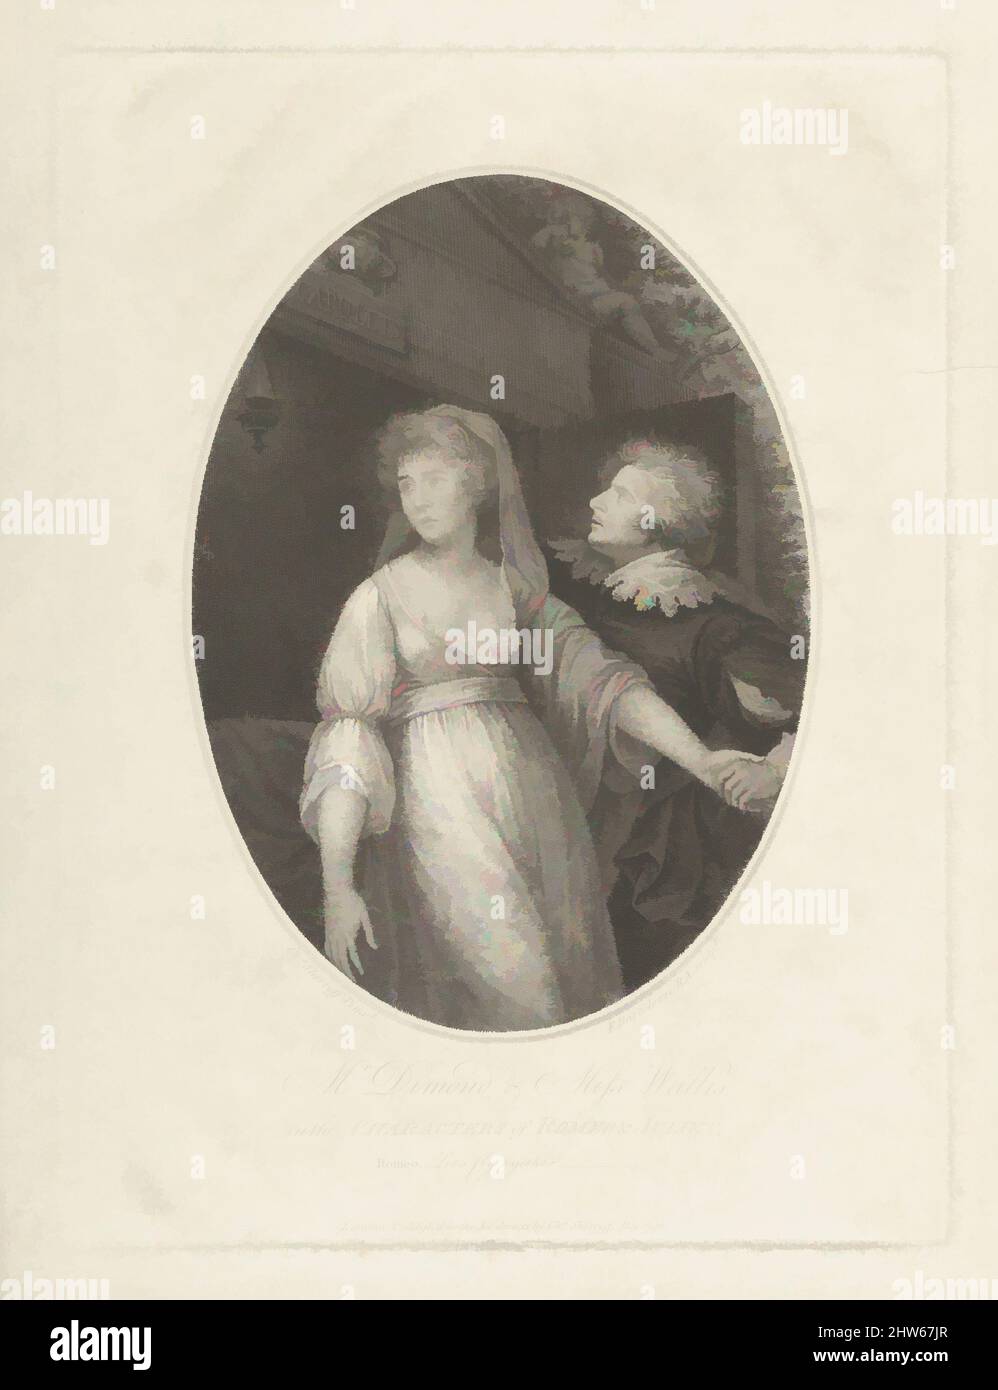 Art inspiré par M. Dimond et Mlle Wallis dans les personnages de Roméo et Juliette, 1 mai 1796, gravure et gravure, imprimé à l'encre brune; troisième état de trois, image: 7 5/16 x 5 5/16 po. (18,6 x 13,5 cm), estampes, d'après Charles Shirreff (Britannique, Édimbourg, env. 1750 environ 1831 Bath), The, Classic œuvres modernisées par Artotop avec une touche de modernité. Formes, couleur et valeur, impact visuel accrocheur sur l'art émotions par la liberté d'œuvres d'art d'une manière contemporaine. Un message intemporel qui cherche une nouvelle direction créative. Artistes qui se tournent vers le support numérique et créent le NFT Artotop Banque D'Images